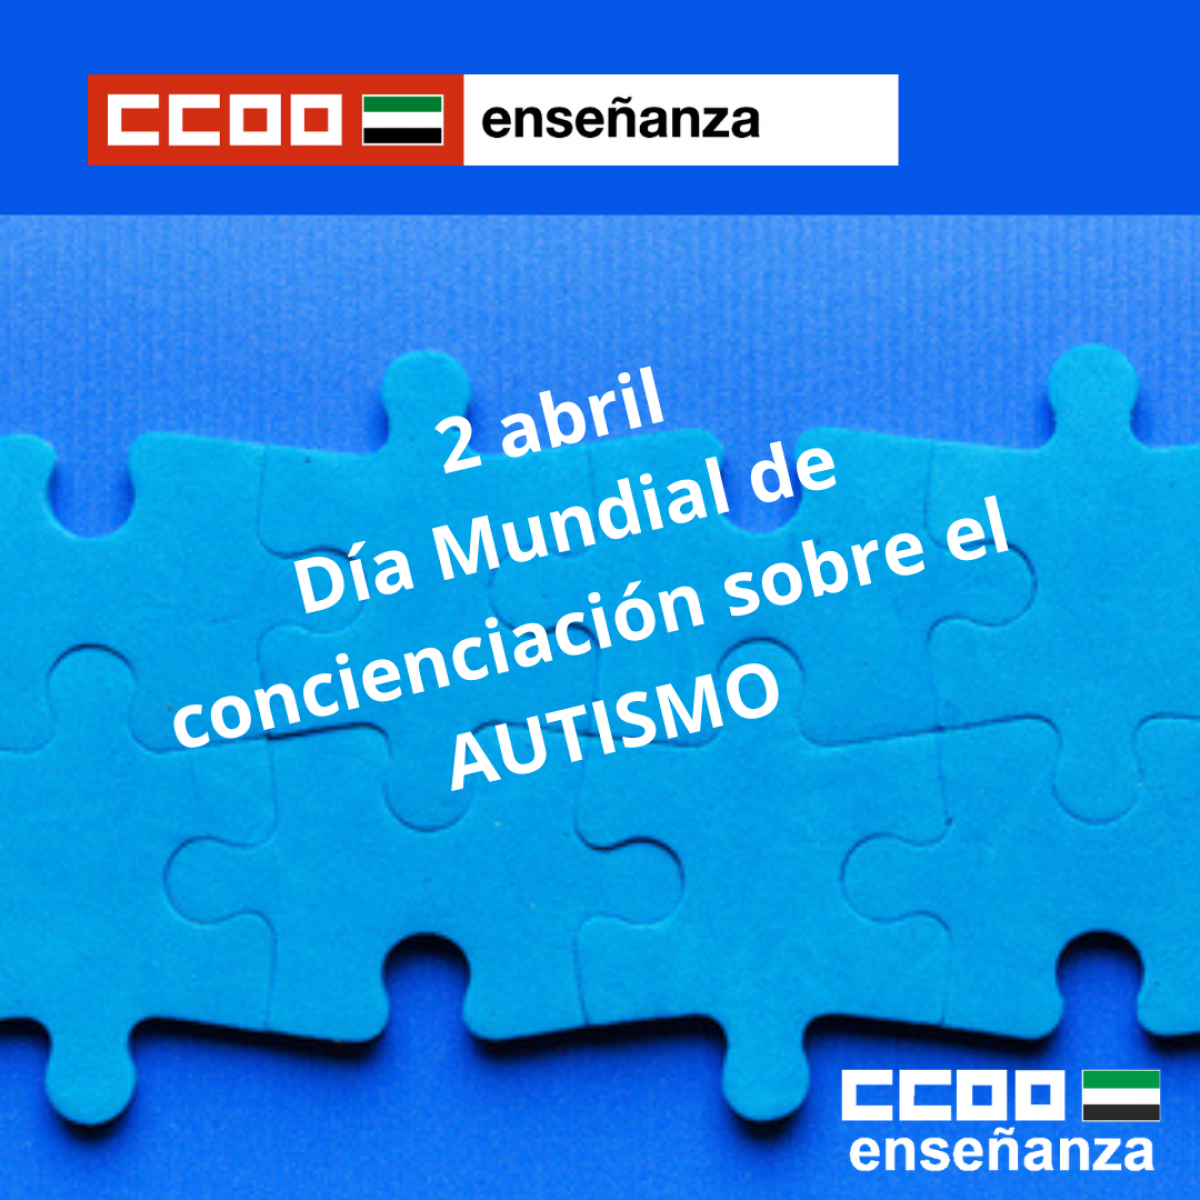 2 abril dia mundial de la concienciacion del autismo